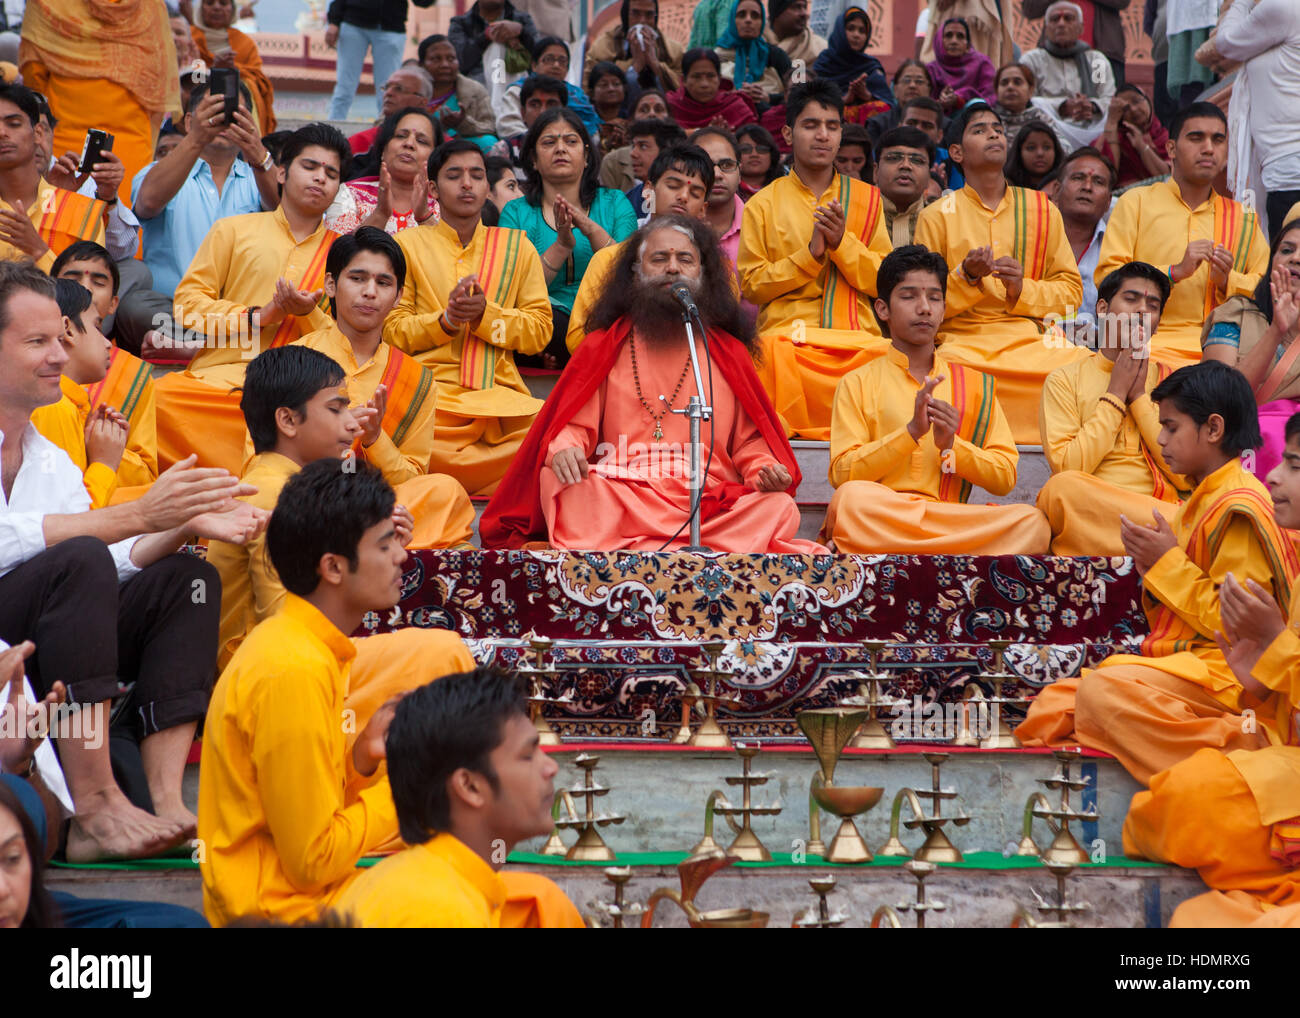 Soirée Ganga Aarti Cérémonie à l'Ashram Parmarth Niketan à Rishikesh,Uttarakhand, Inde Banque D'Images